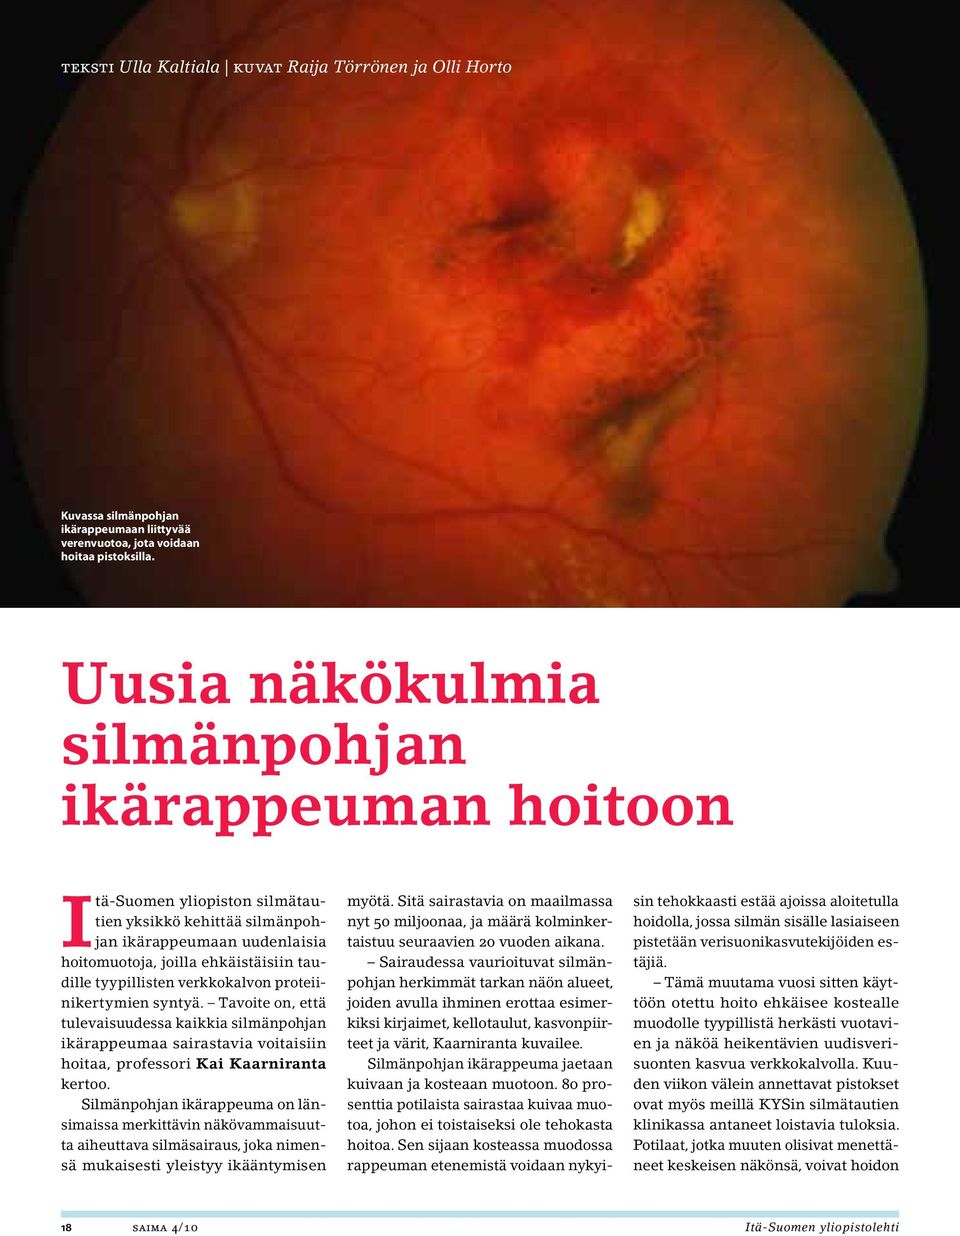 verkkokalvon proteiinikertymien syntyä. Tavoite on, että tulevaisuudessa kaikkia silmänpohjan ikärappeumaa sairastavia voitaisiin hoitaa, professori Kai Kaarniranta kertoo.